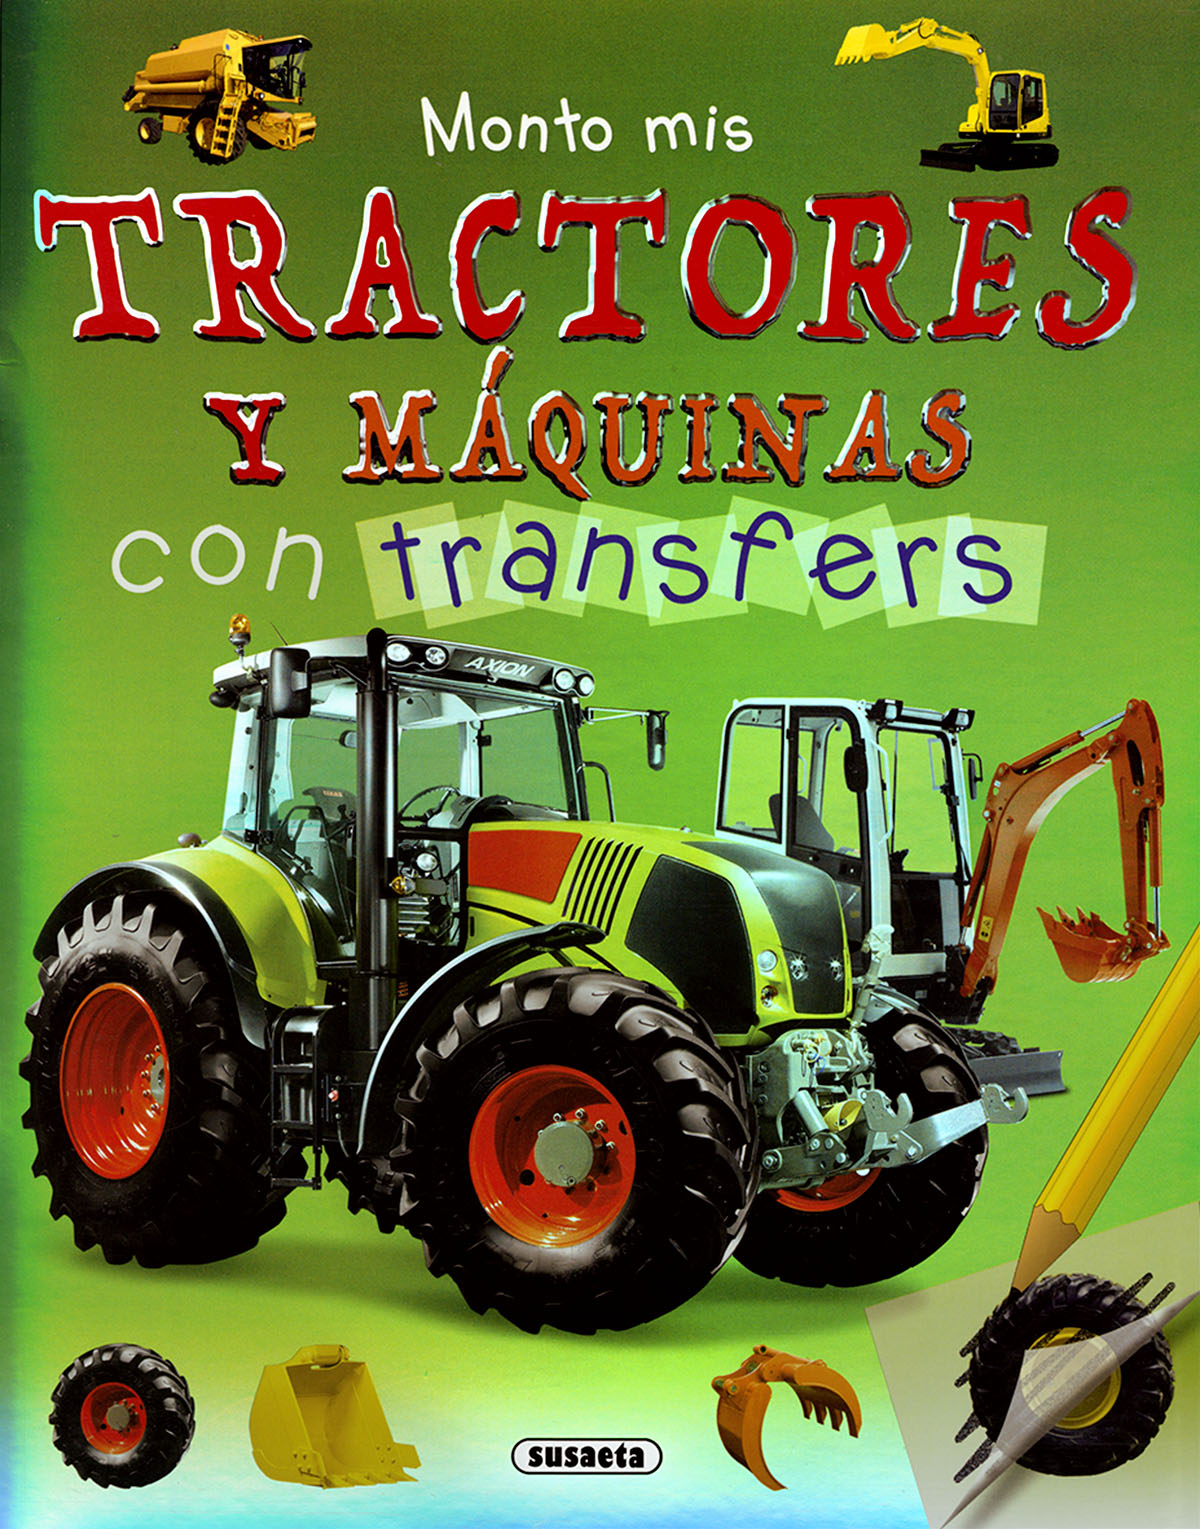 Monto mis tractores y mquinas con transfers